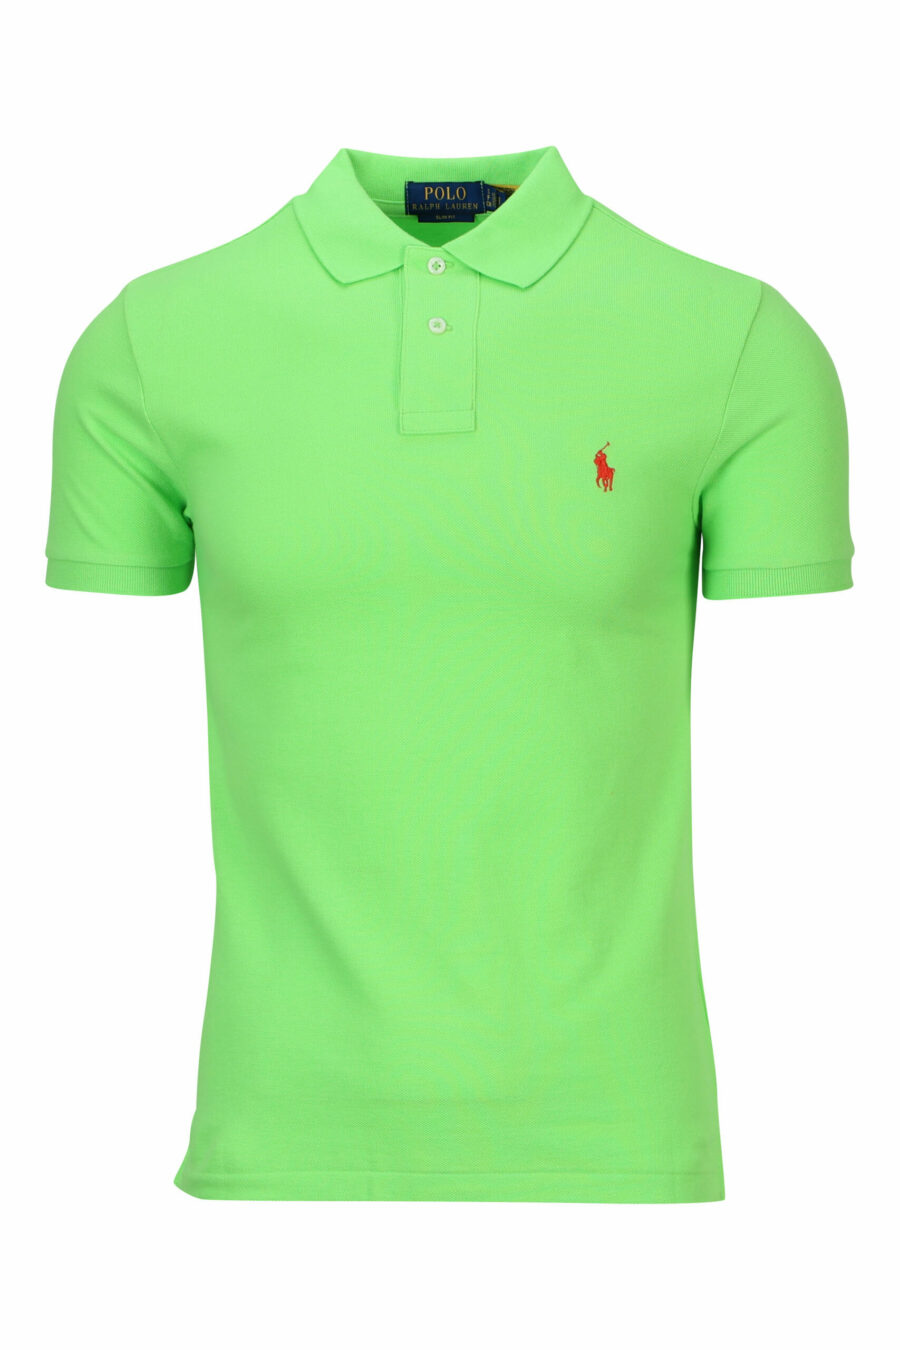 Pólo verde claro com mini-logotipo "polo" - 3616411864338